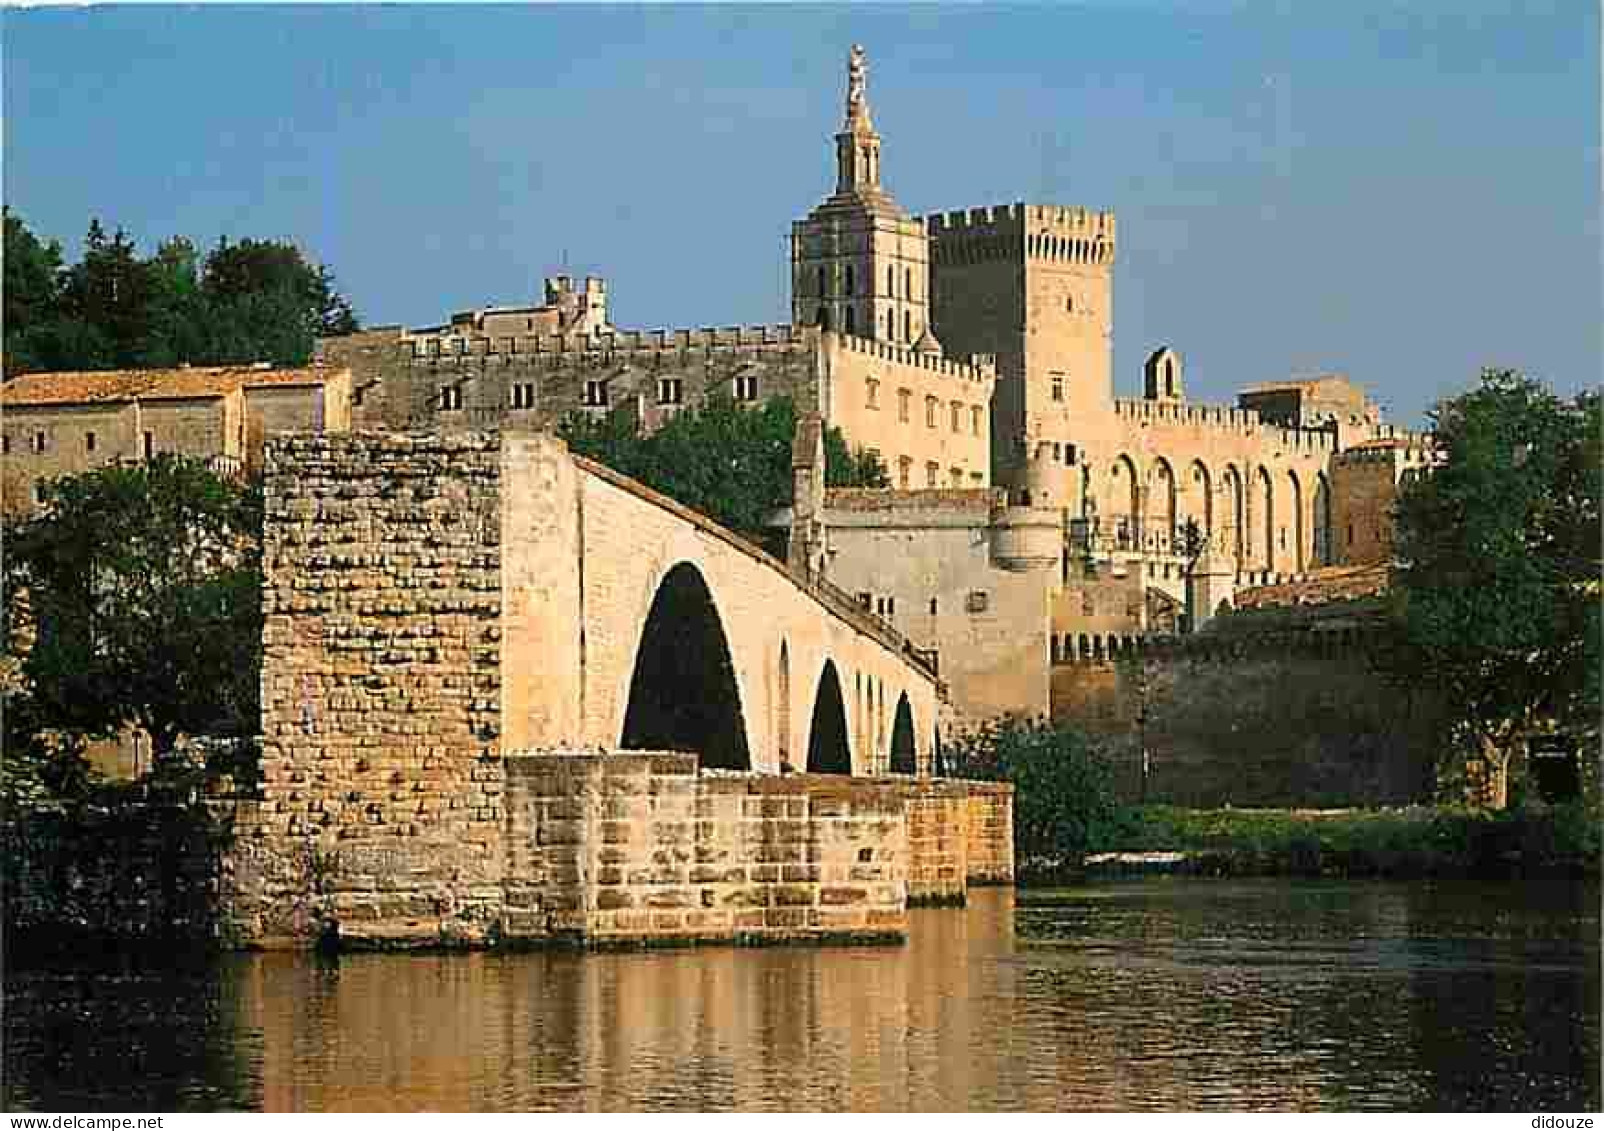 84 - Avignon - Le Palais Des Papes - Pont Saint Benezet - Petit Palais - Clocher De La Cathédrale Notre-Dame Des Doms -  - Avignon